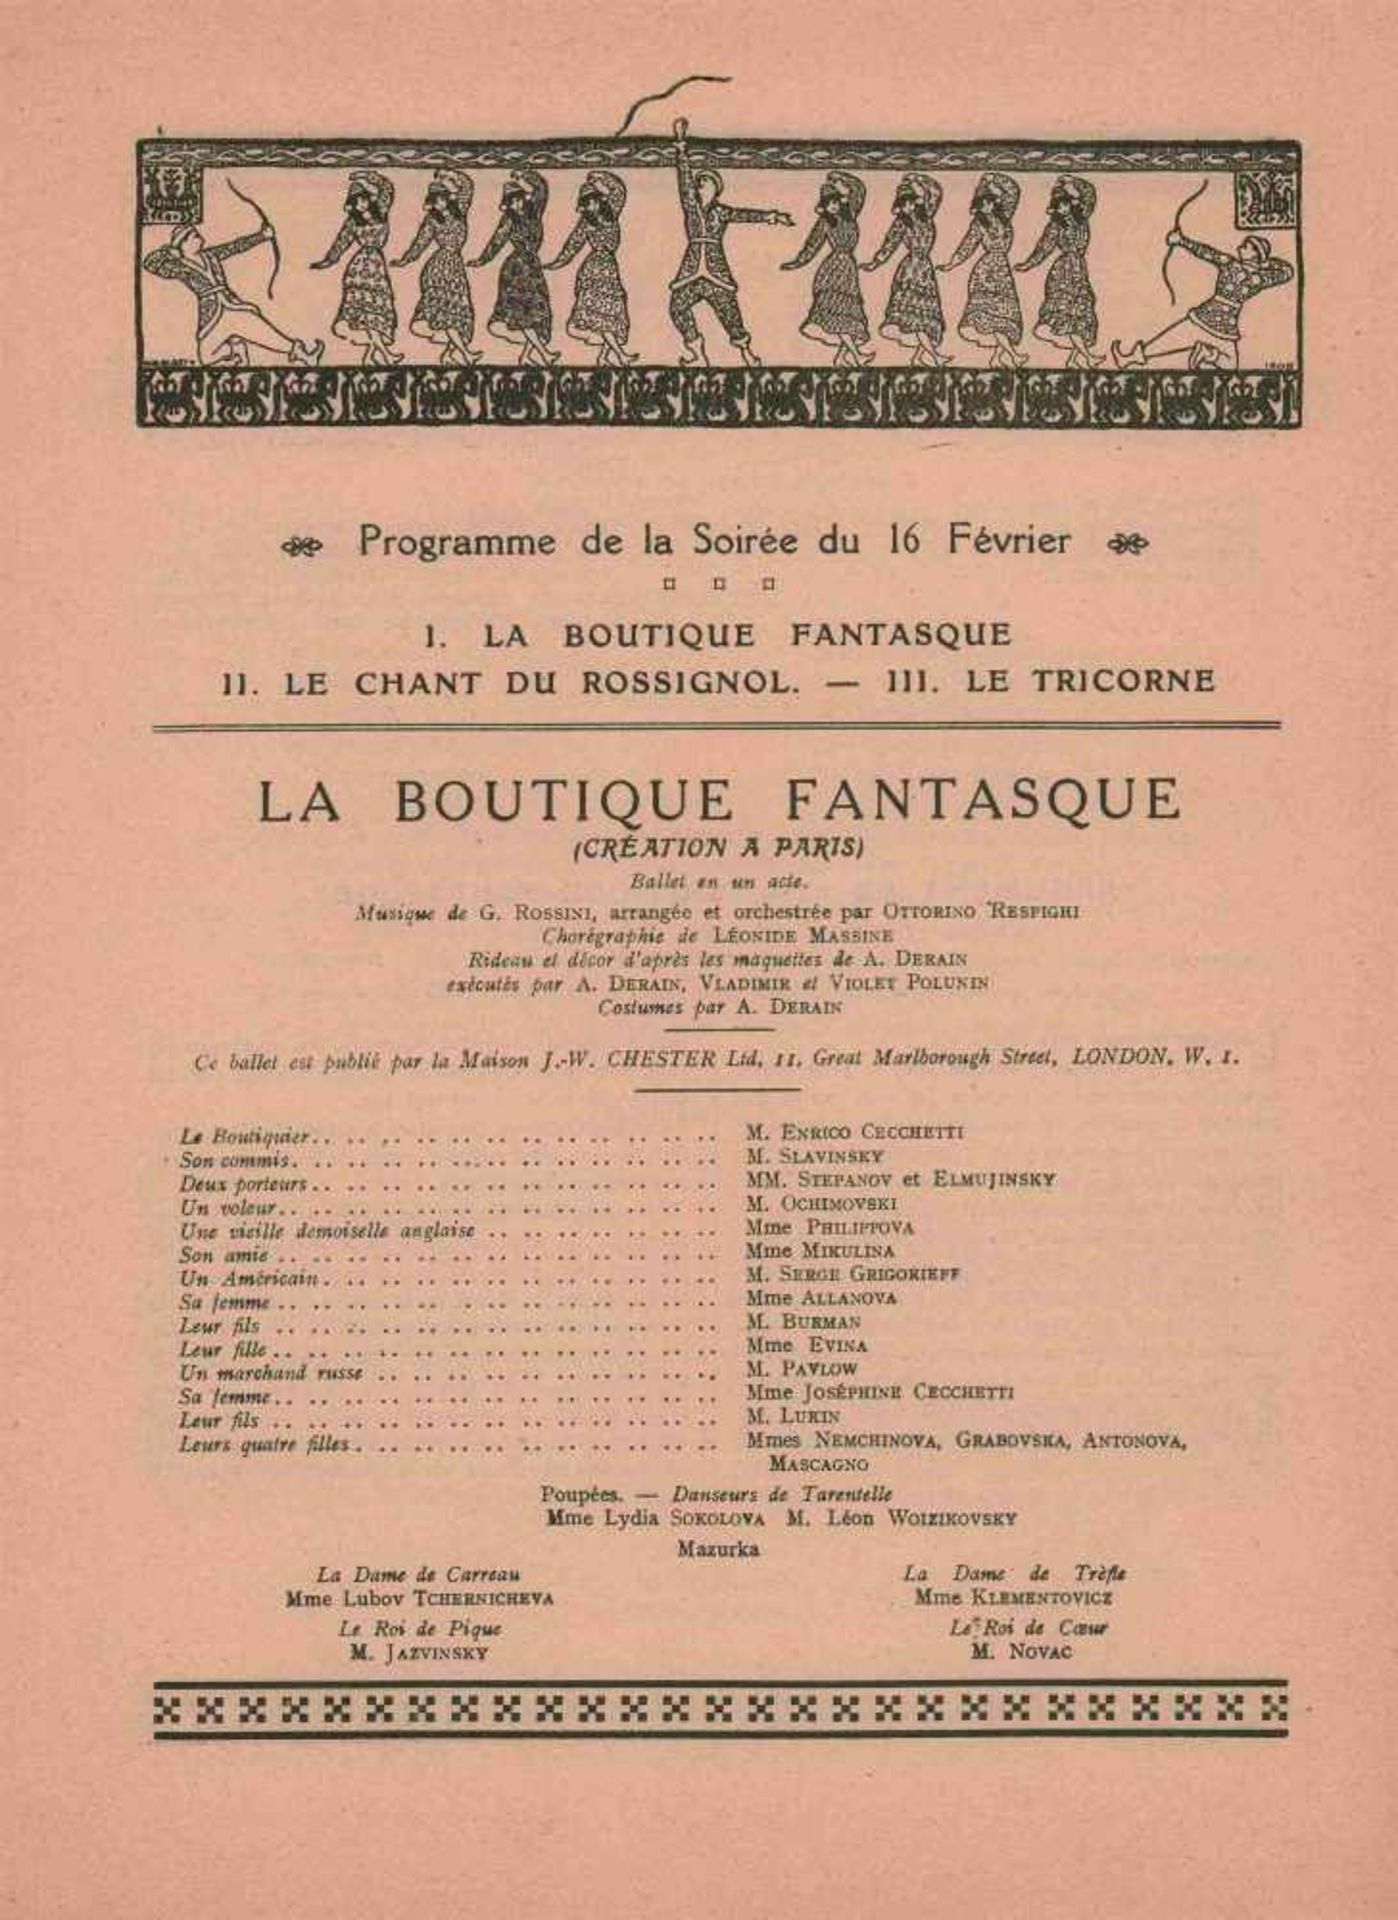 [BALLETS RUSSES, BAKST, DERAIN, MARTY, PICASSO] Ballets Russes in l'Opéra de Paris, 11. Saison, - Image 2 of 2